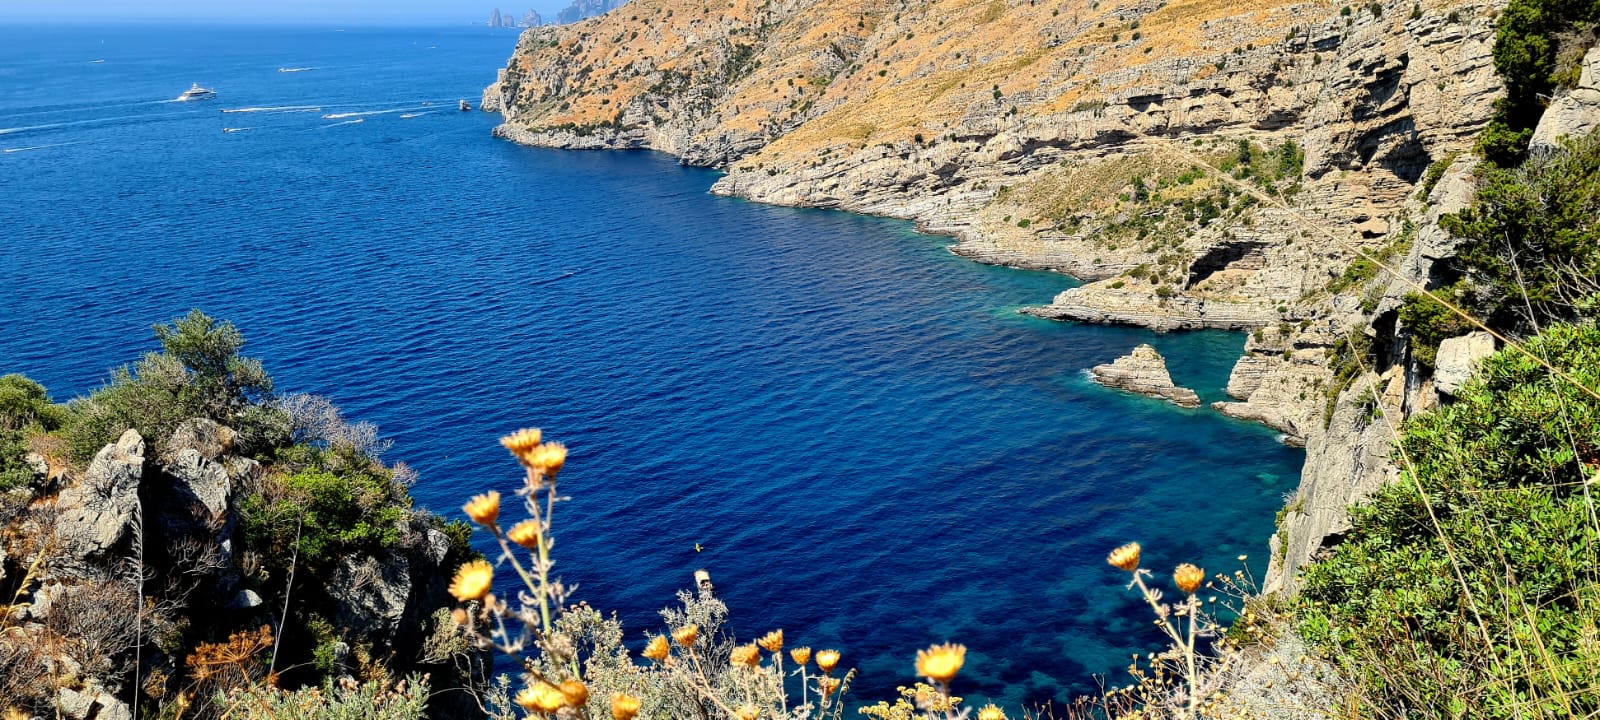 Baia di Ieranto, Yeranto Koyu, Sorrento, Sorrento'da denize girilecek yerler, Sorrento'da ücretsiz denize nerede girilir, Napoli'de nerede denize girilir, Amalfi Kıyılarında nerede denize girilir, koruma altındaki sahilleri